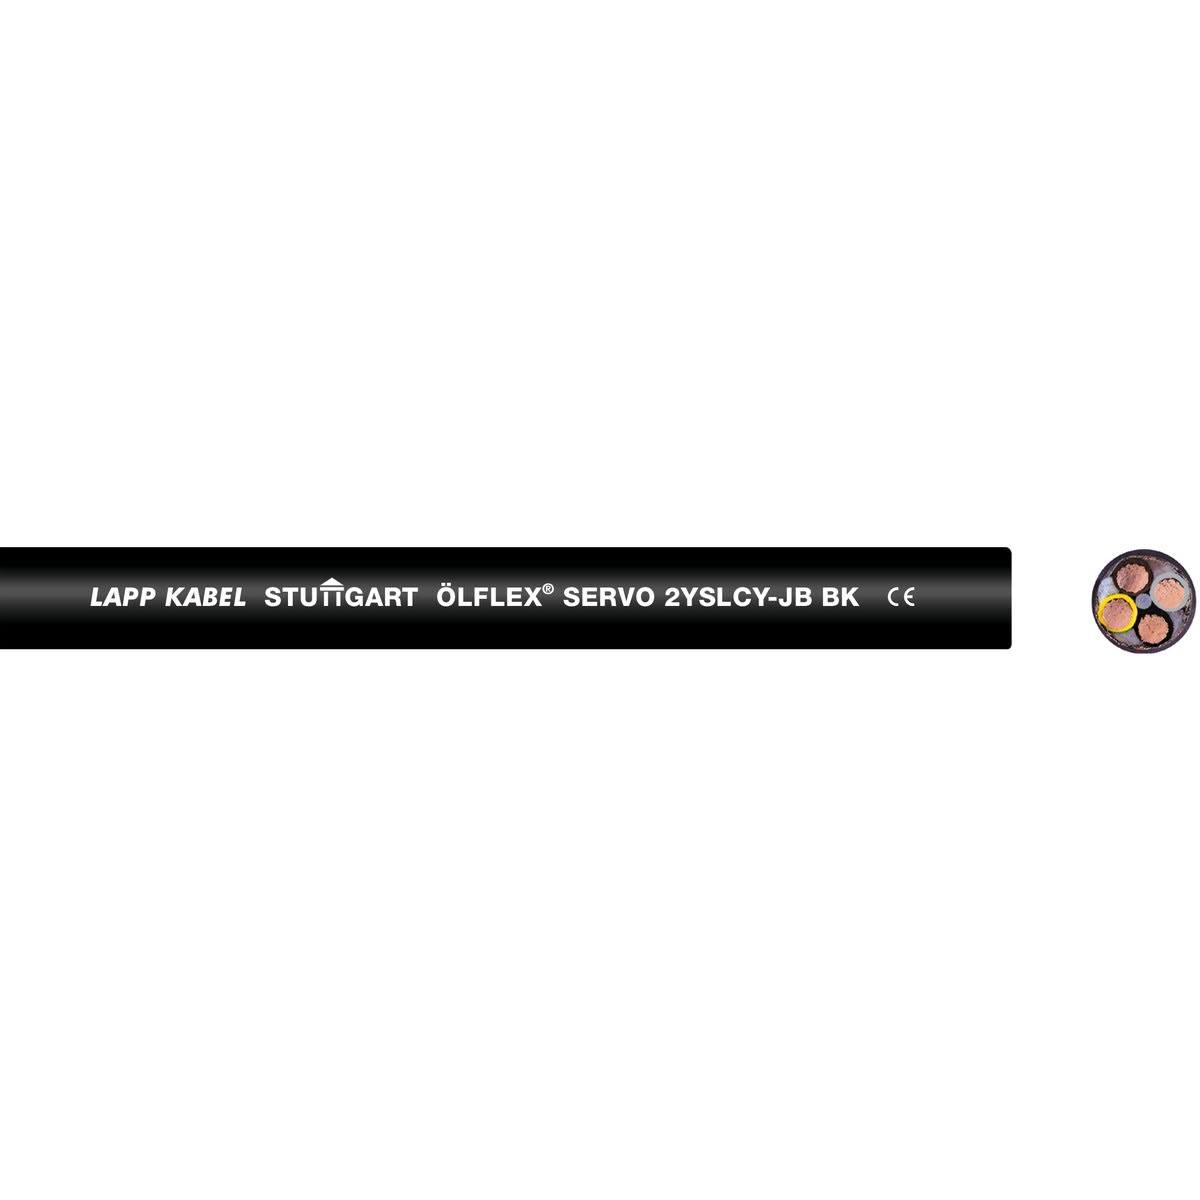 Lapp - ÖLFLEX SERVO 2YSLCY-JB BK 4G4